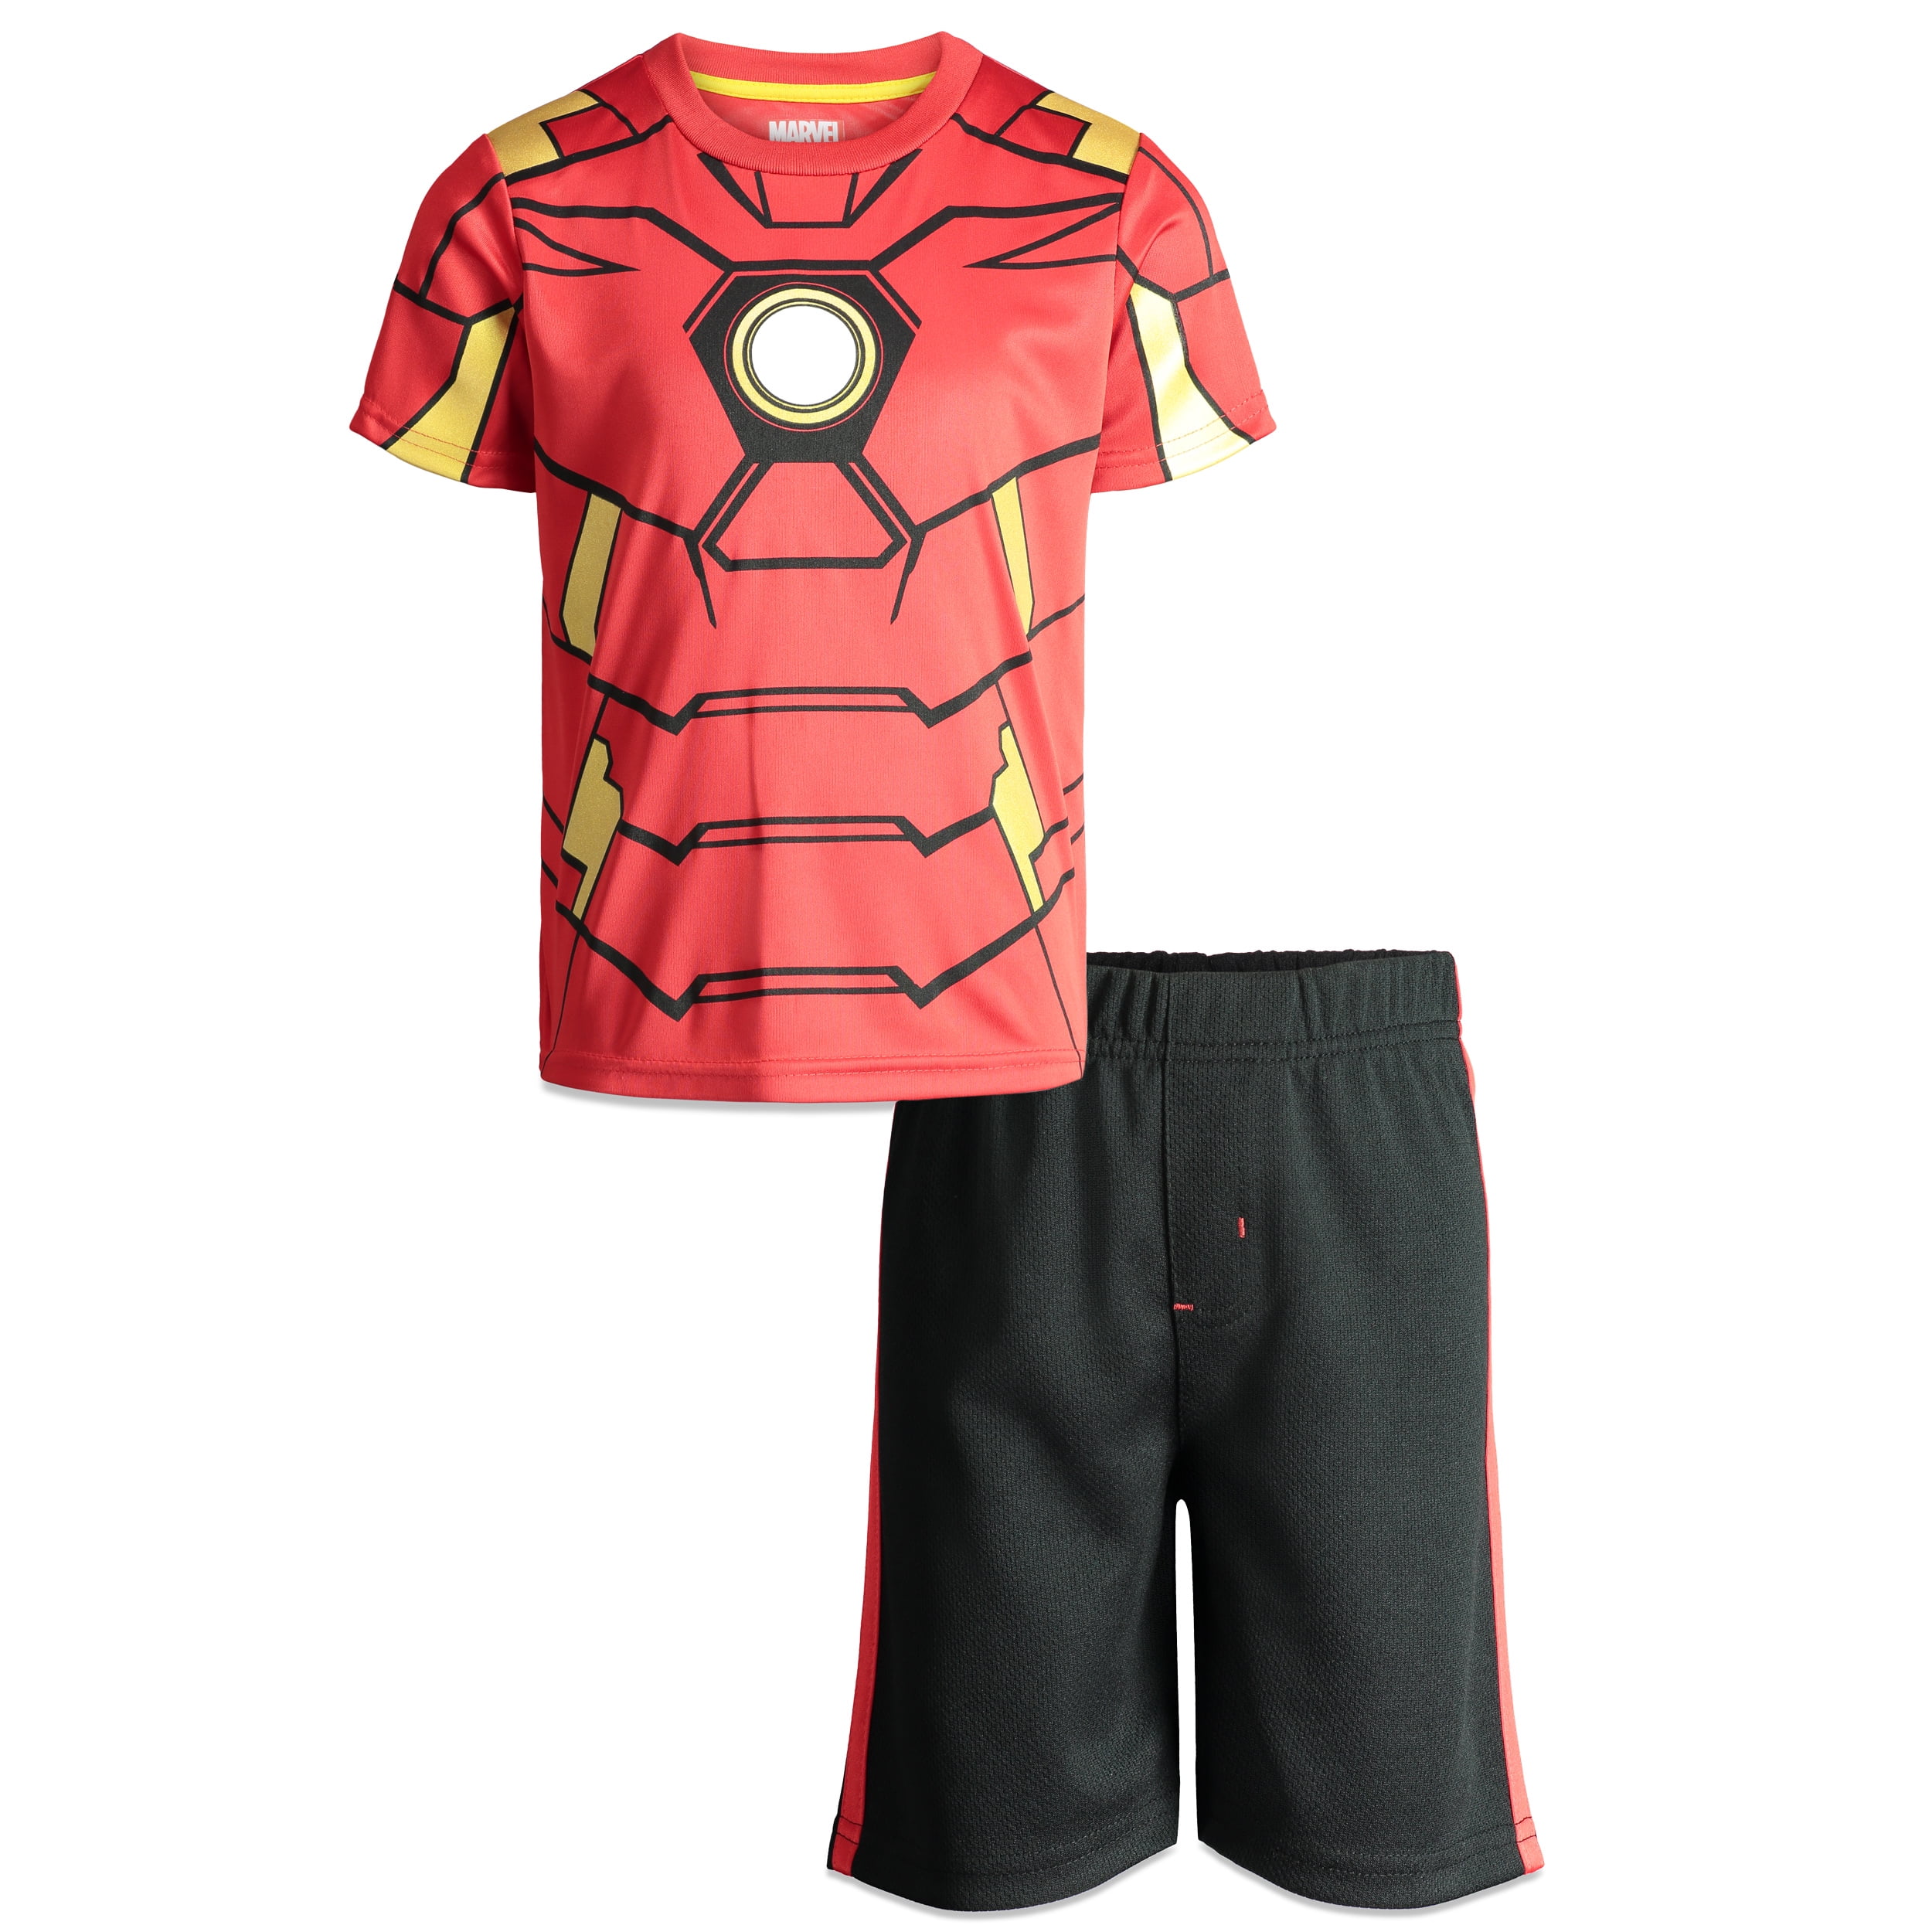 Marvel Avengers Iron Man Boys' T Shirt & Shorts Clothing Set ...